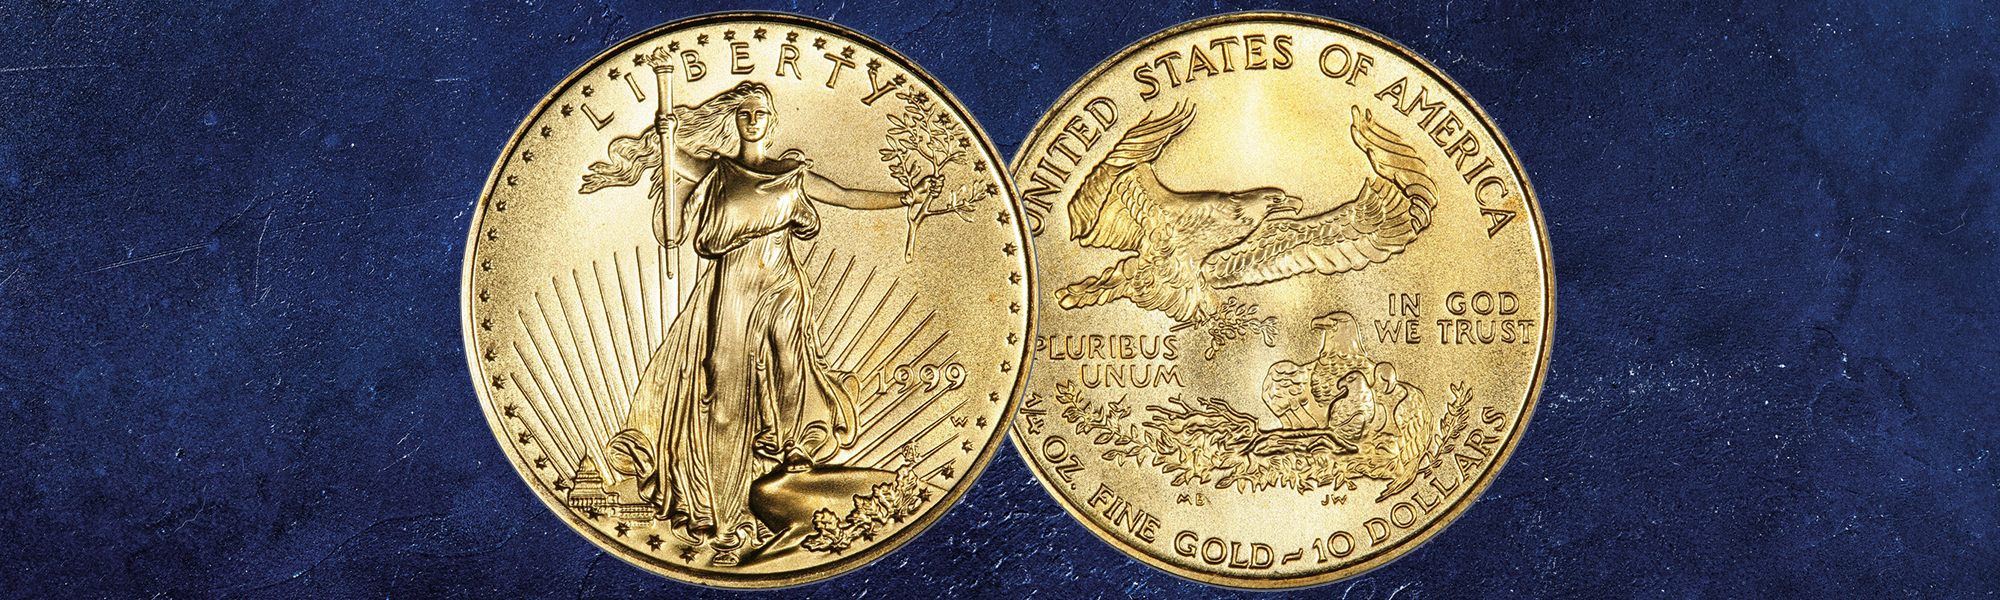 Our Guide to Rare Modern Coins  International Precious Metals - Blog